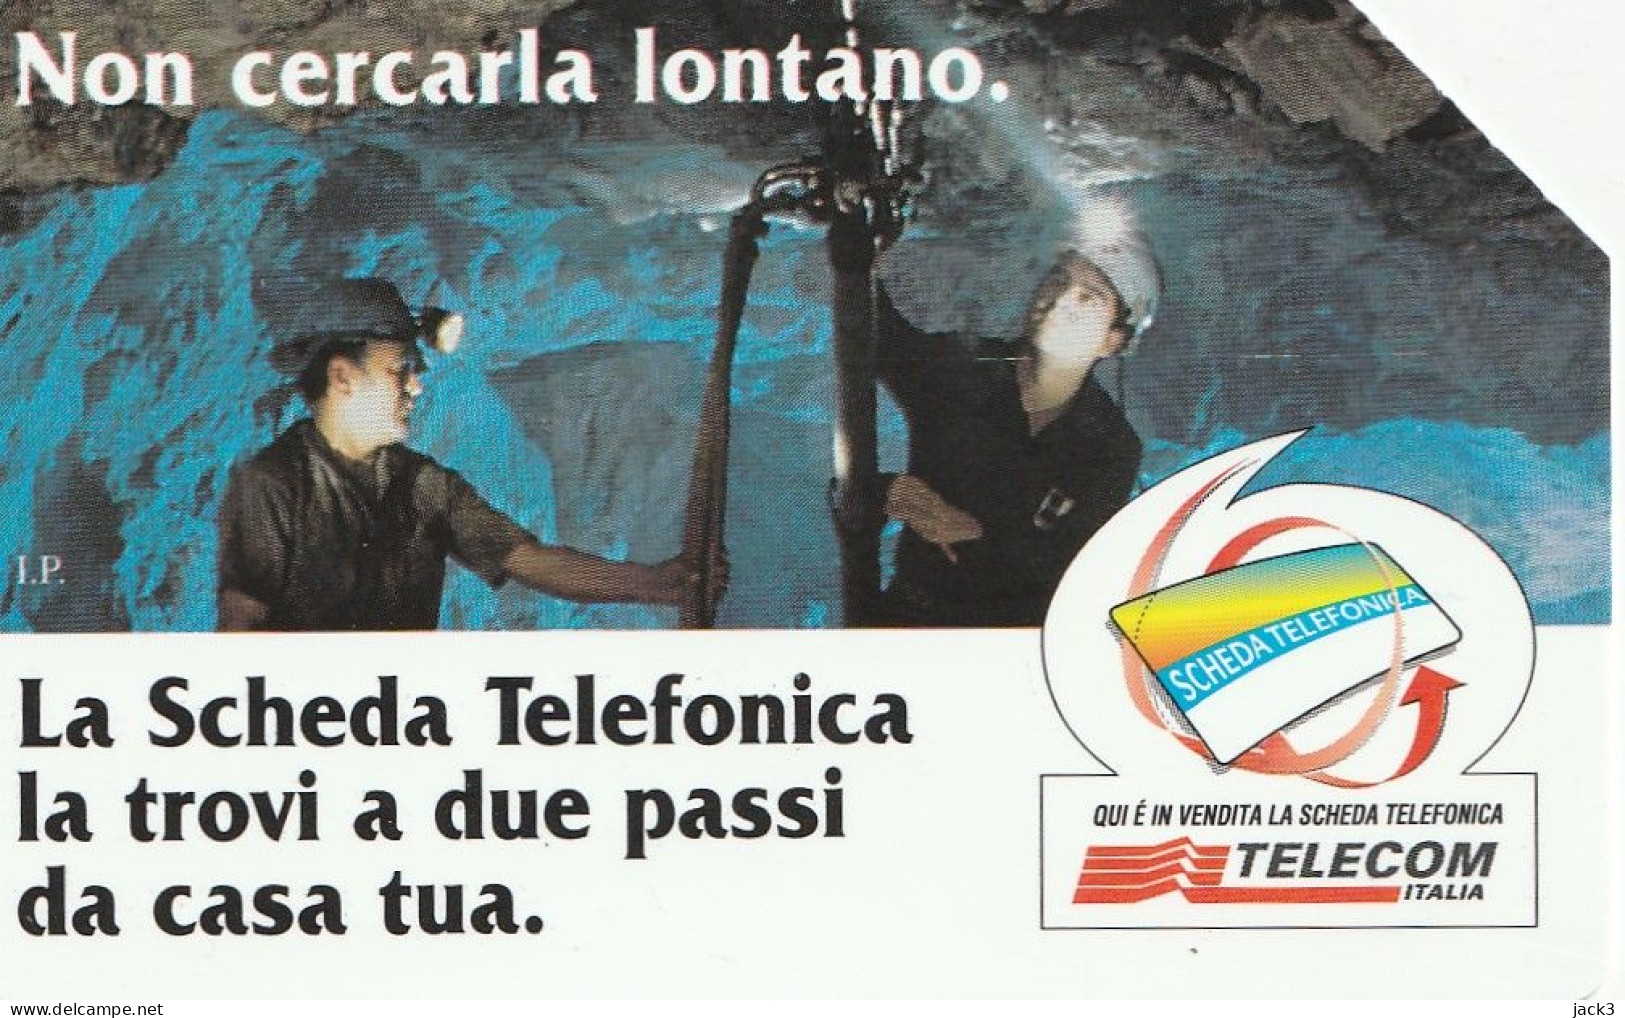 SCEDA TELEFONICA - COMODA DA USARE, FACILE DA TROVARE (2 SCANS) - Publiques Thématiques